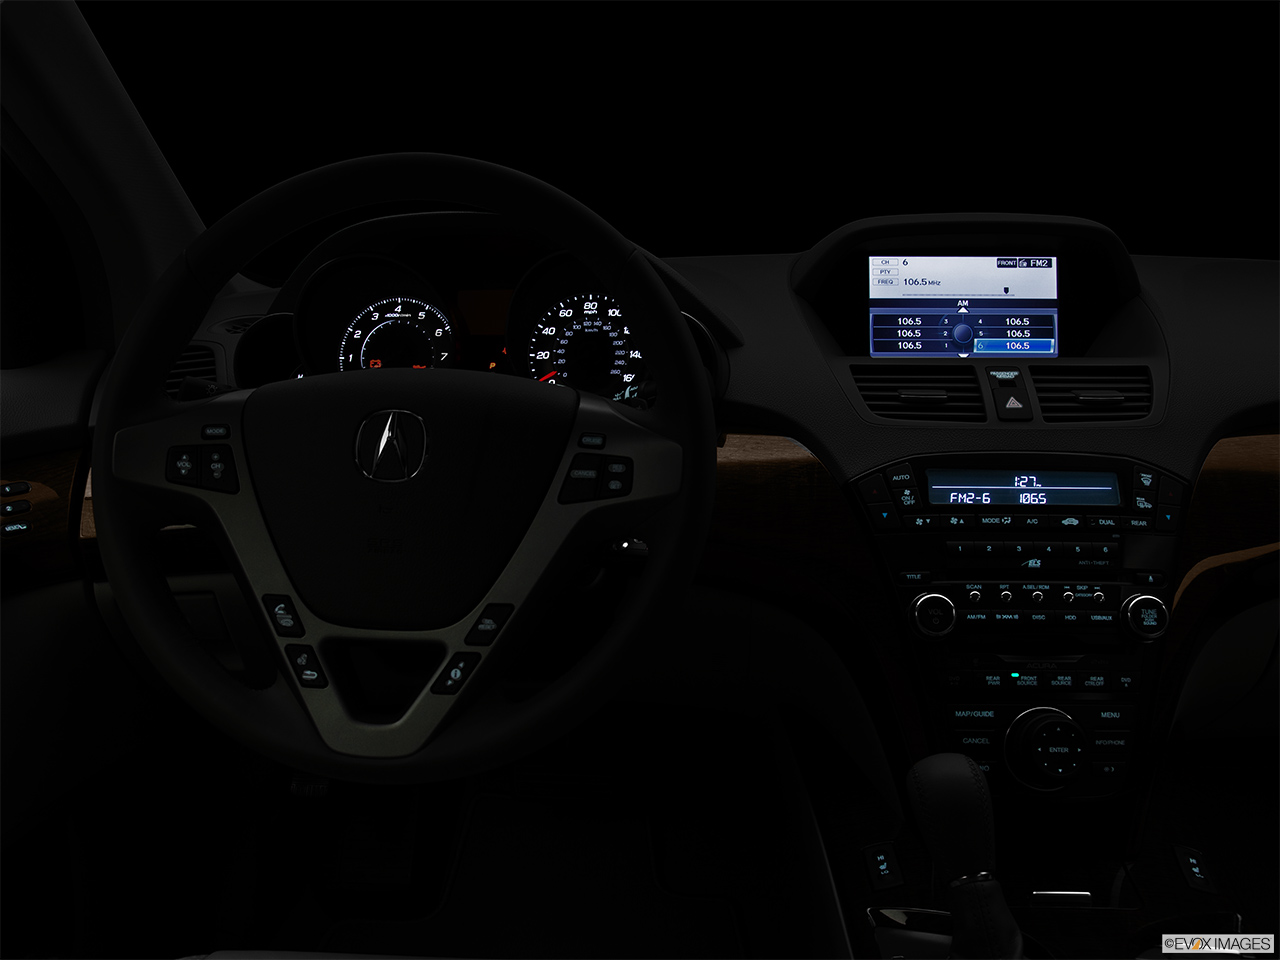 2011 Acura MDX MDX Centered wide dash shot - "night" shot. 